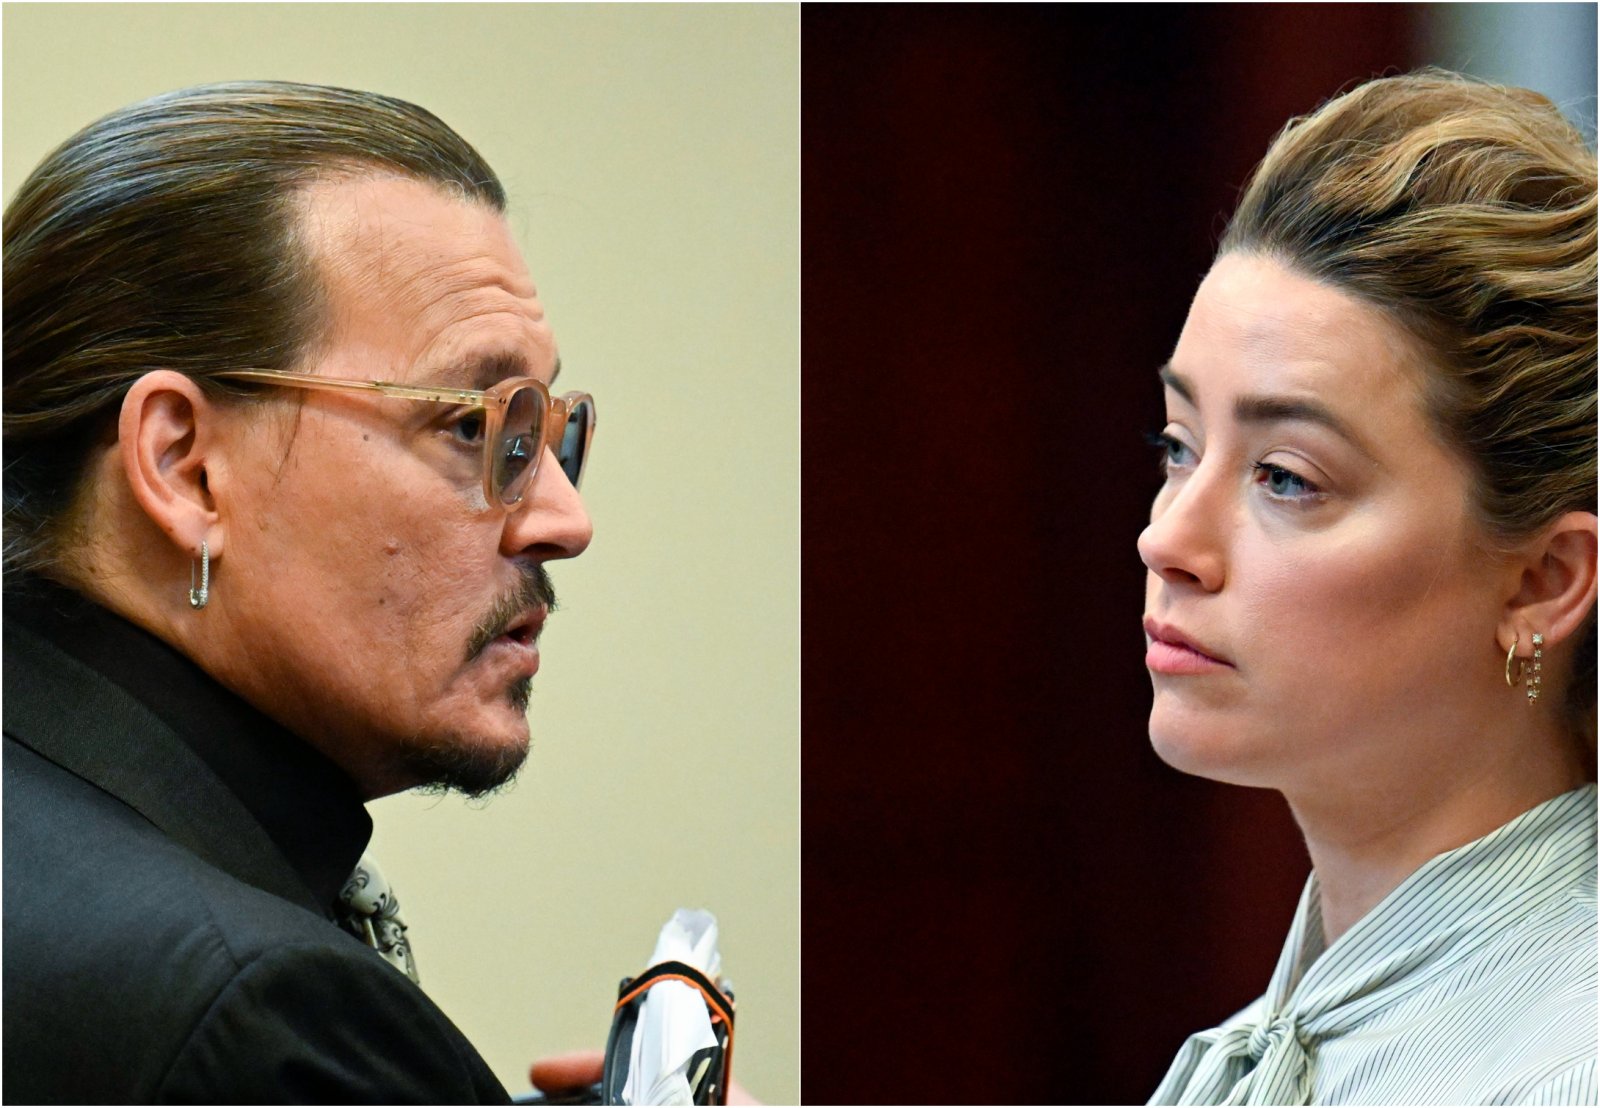 Johnny Depp vyhral súdny spor s exmanželkou Amber Heardovou a odškodné 15 miliónov dolárov